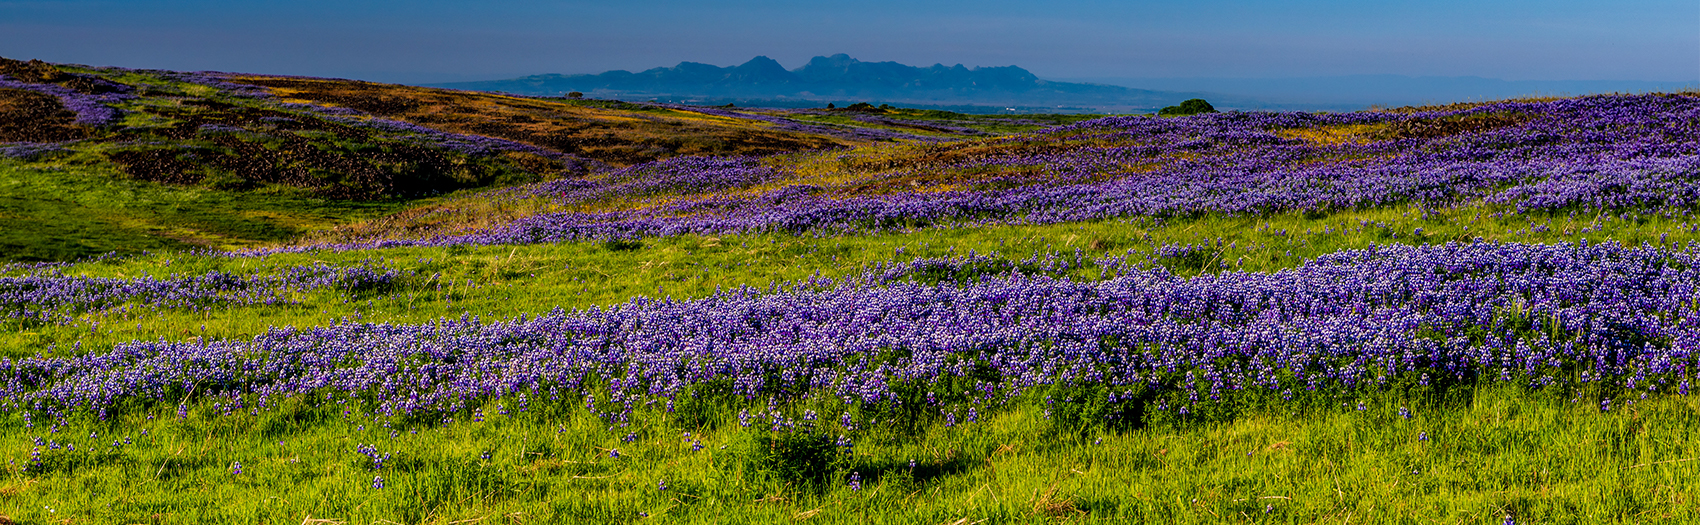 a large field of purple flowers